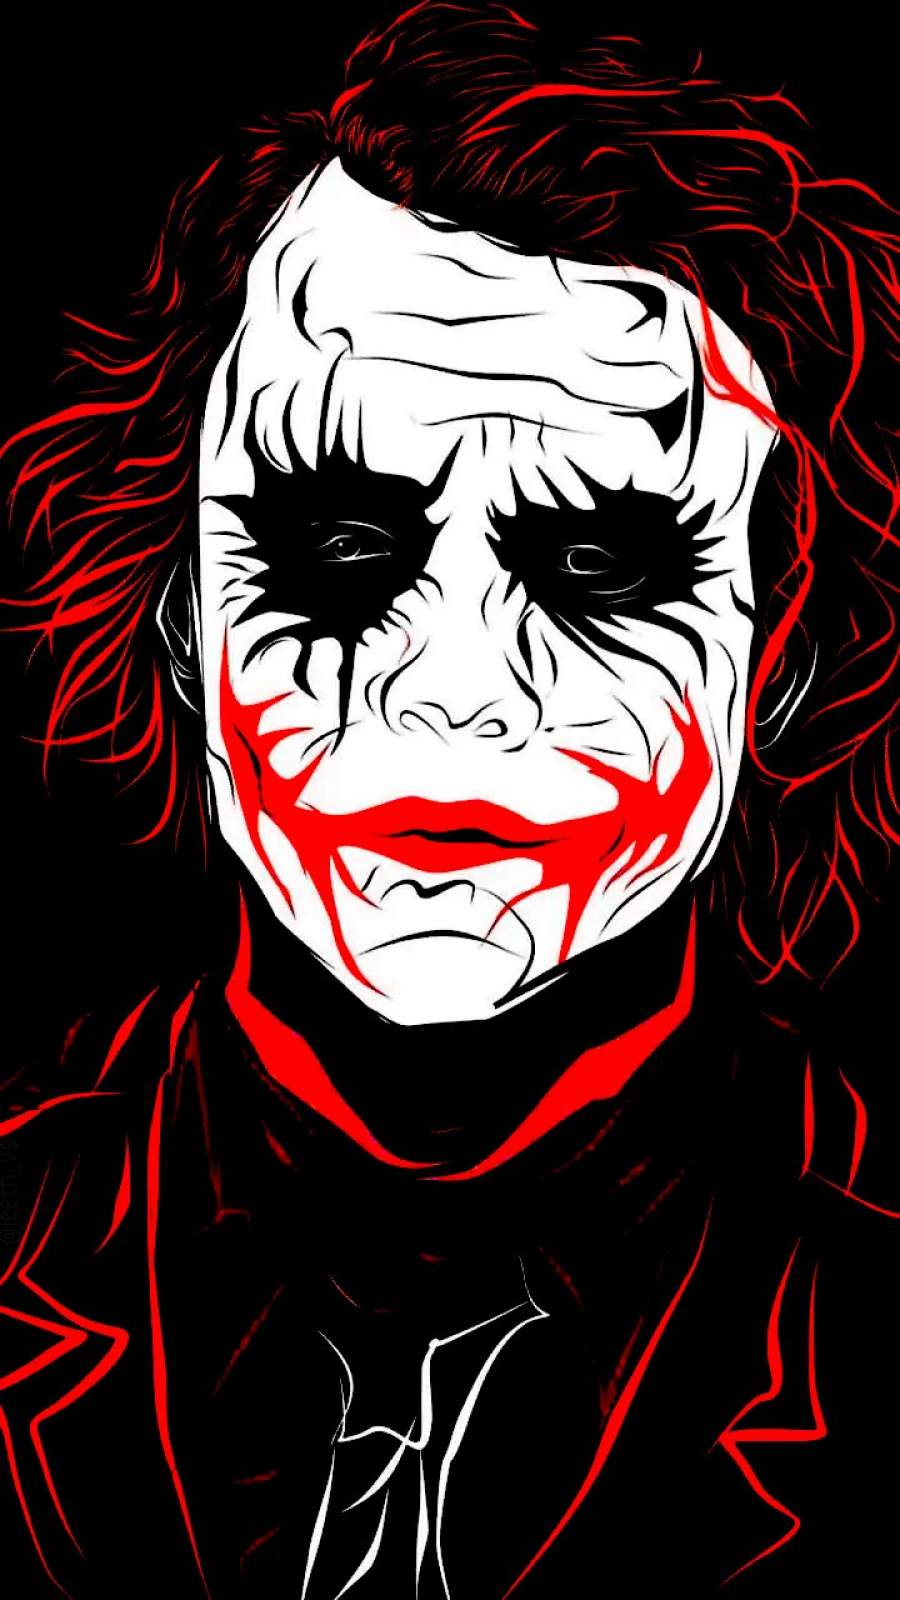 Black Joker wallpaper by prtkmightkillyou  Download on ZEDGE  7942